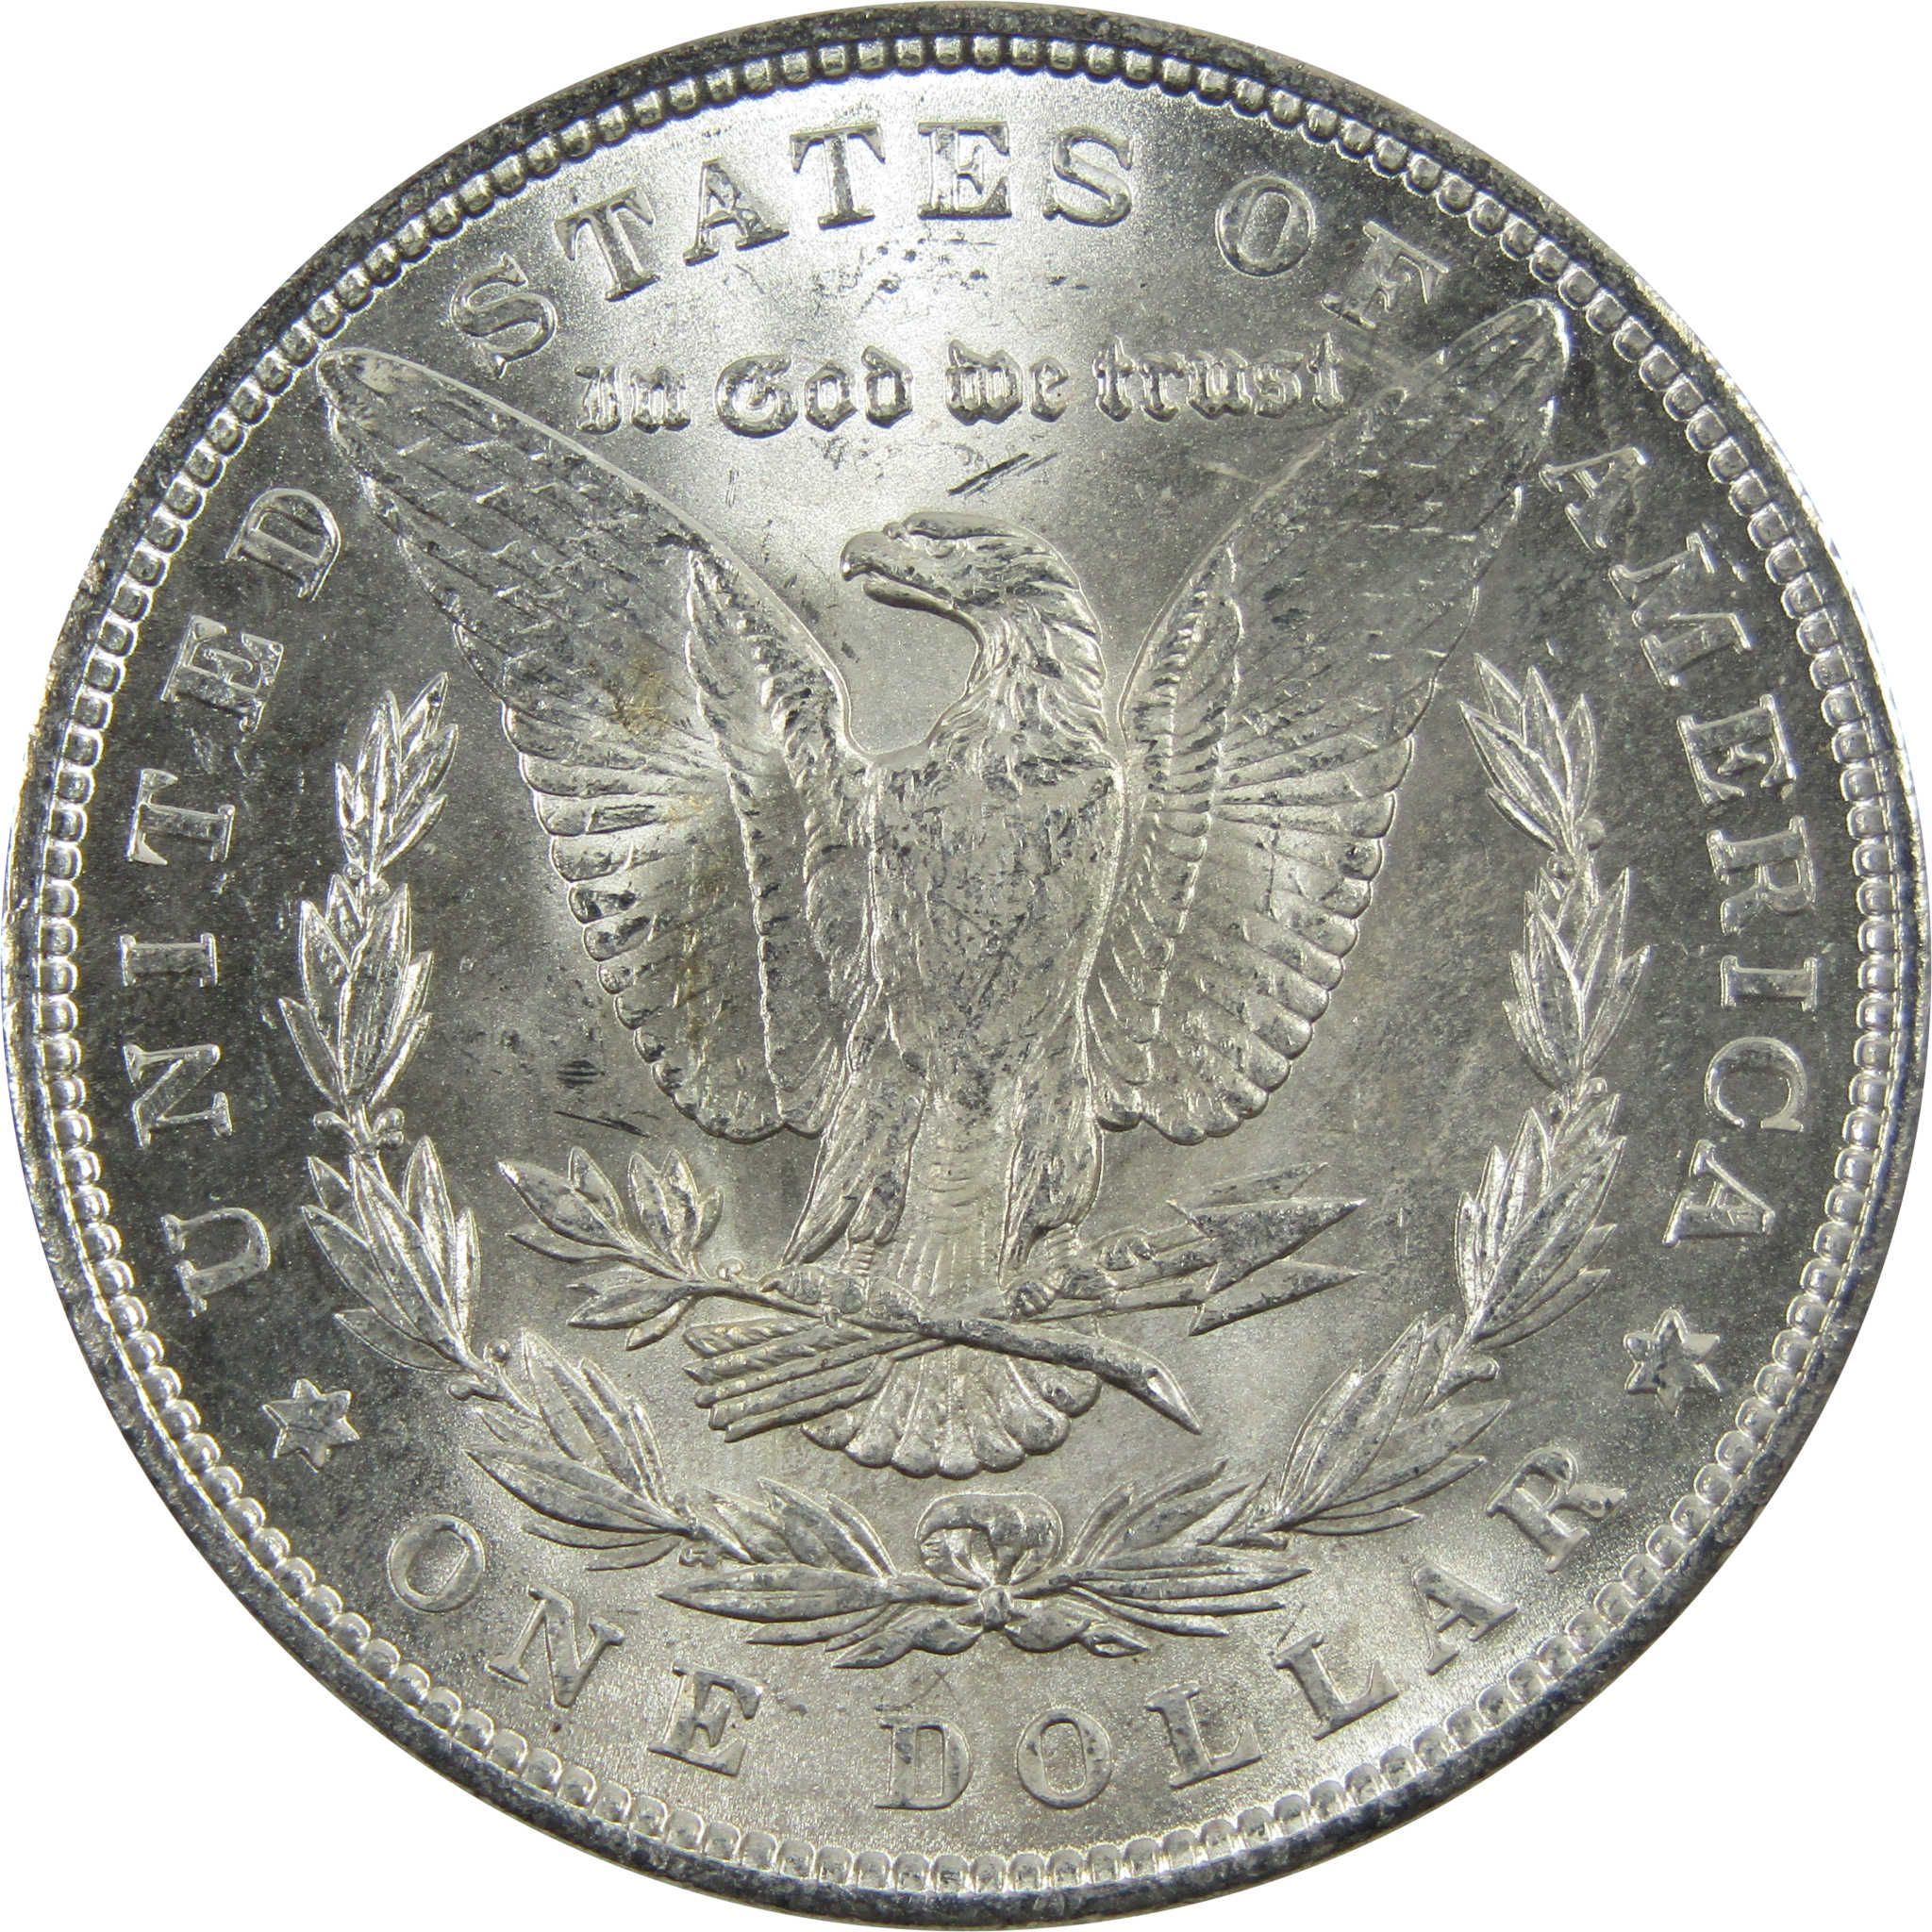 1890 Morgan Dollar BU Uncirculated 90% Silver $1 Coin SKU:I5128 - Morgan coin - Morgan silver dollar - Morgan silver dollar for sale - Profile Coins &amp; Collectibles